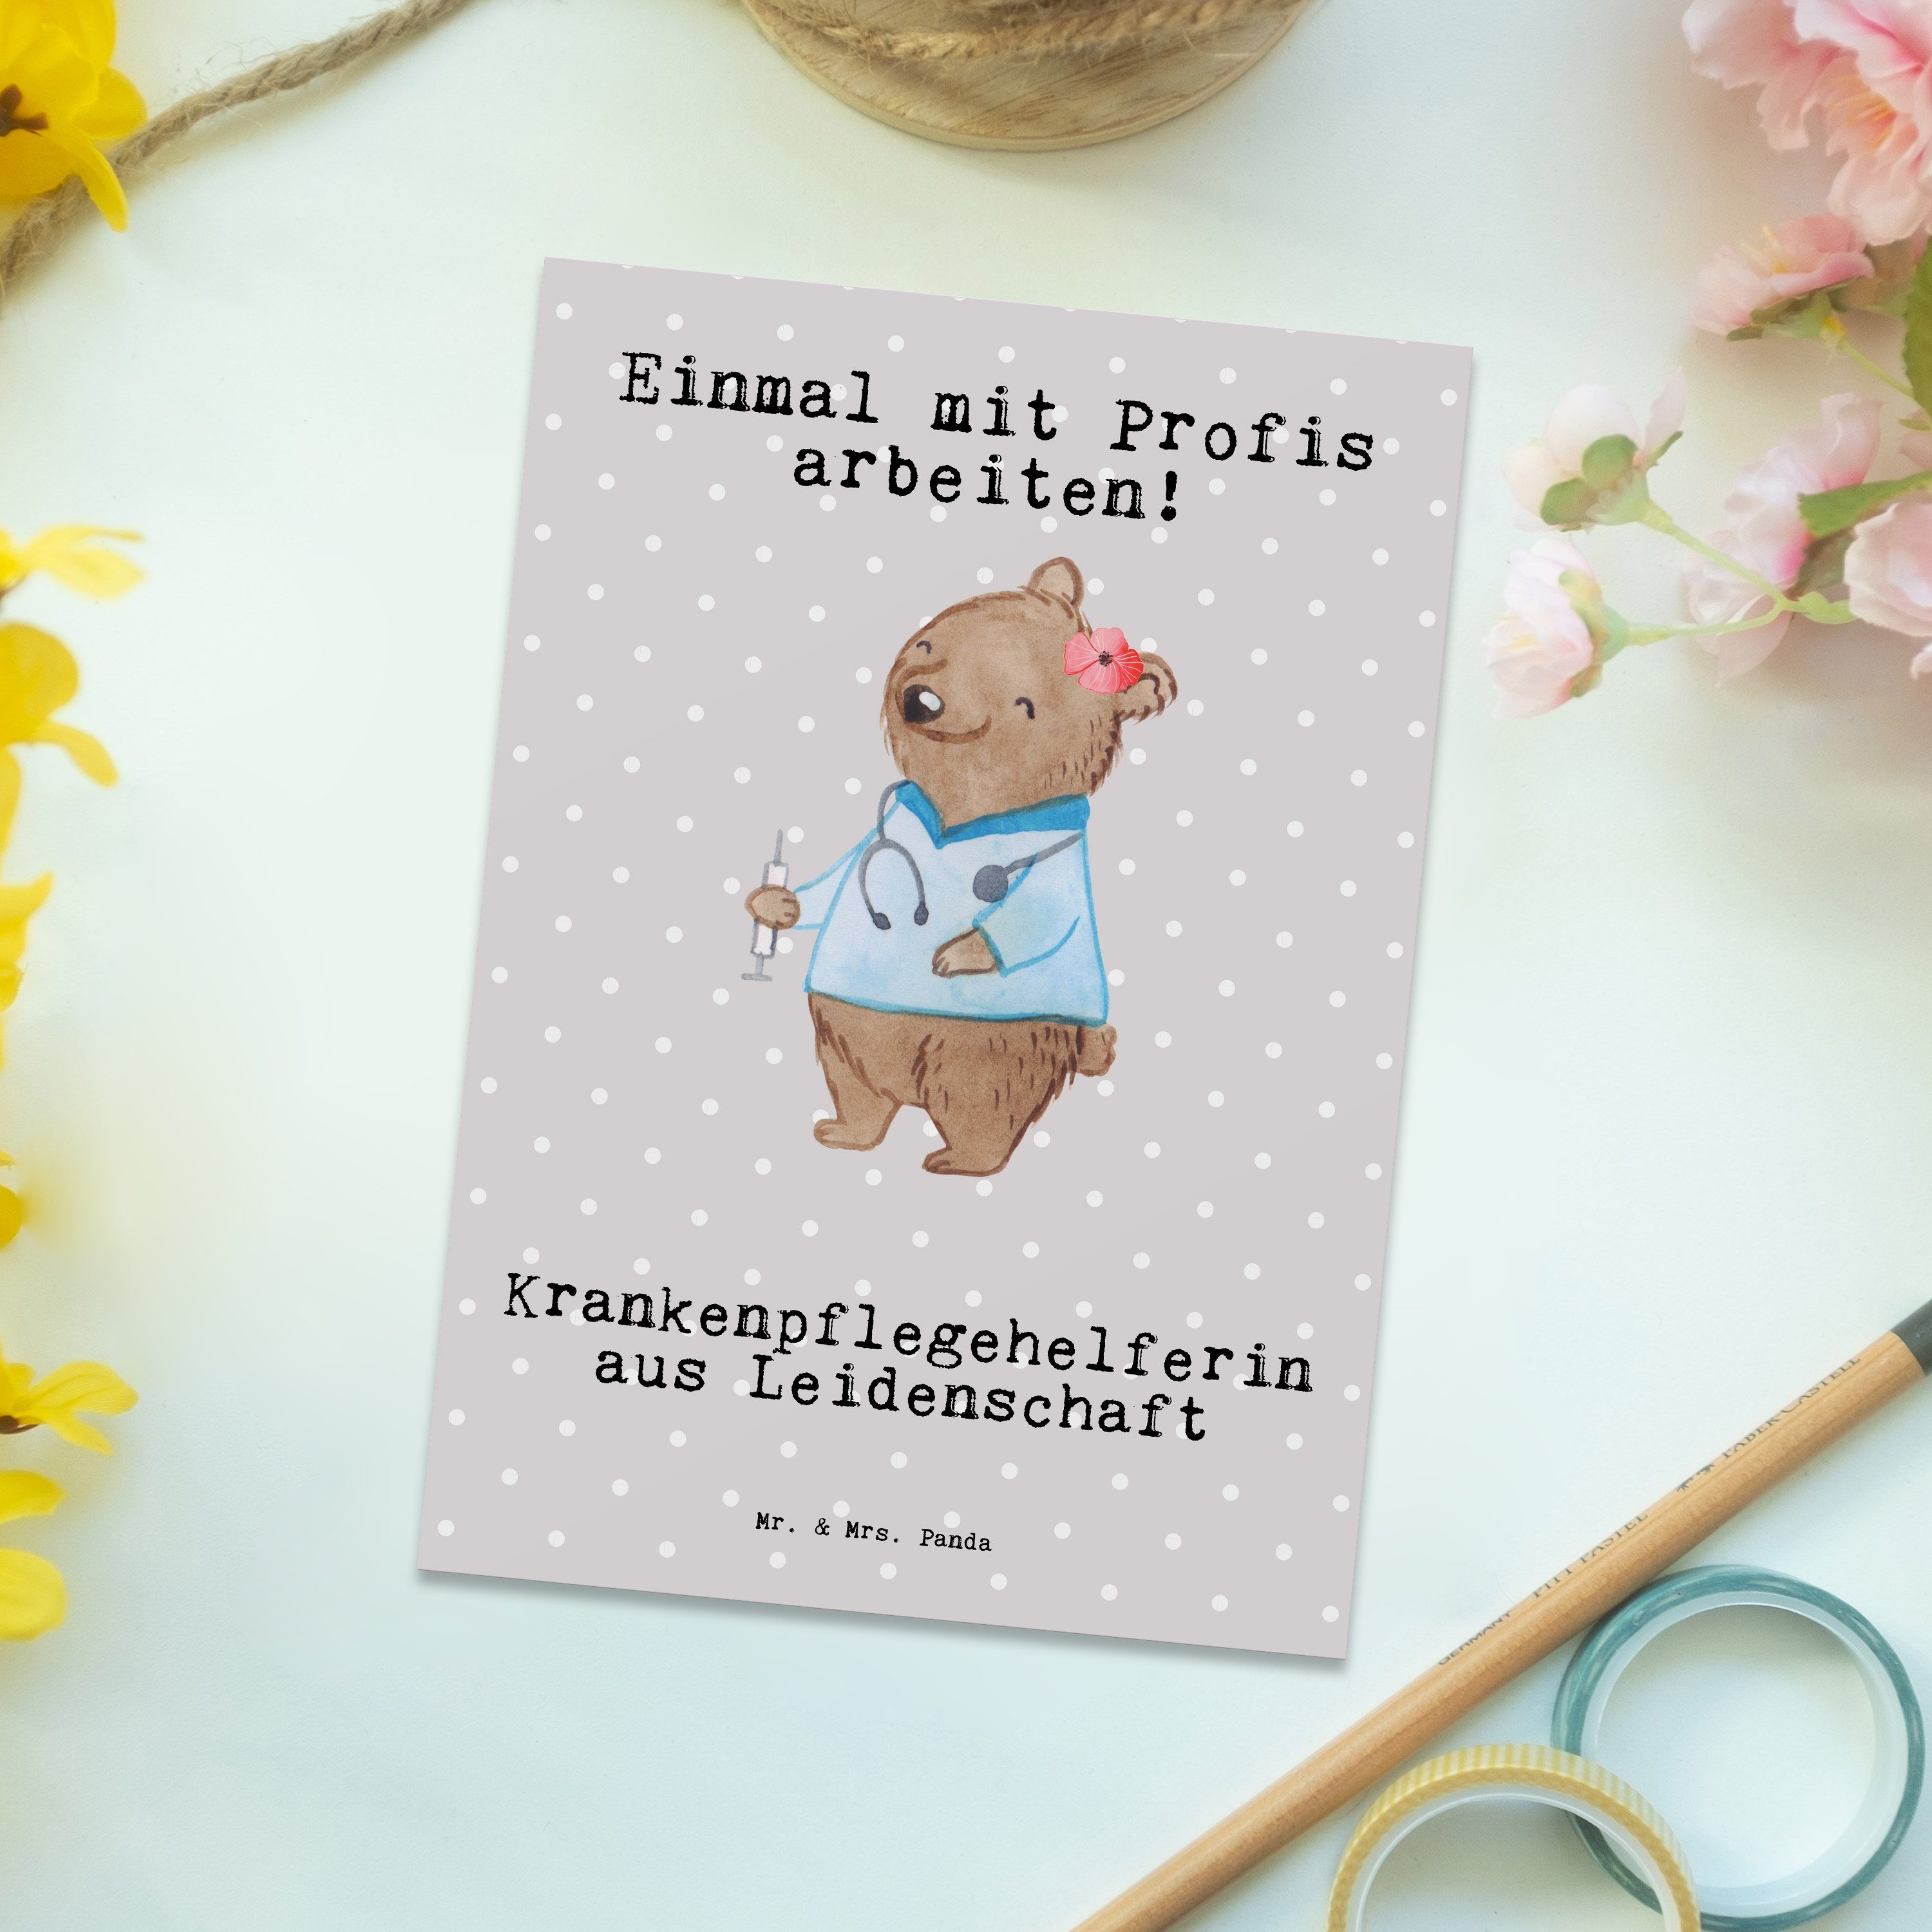 Mr. & Leidenschaft aus Postkarte Mrs. Panda Sch Grau Krankenpflegehelferin - Geschenk, - Pastell